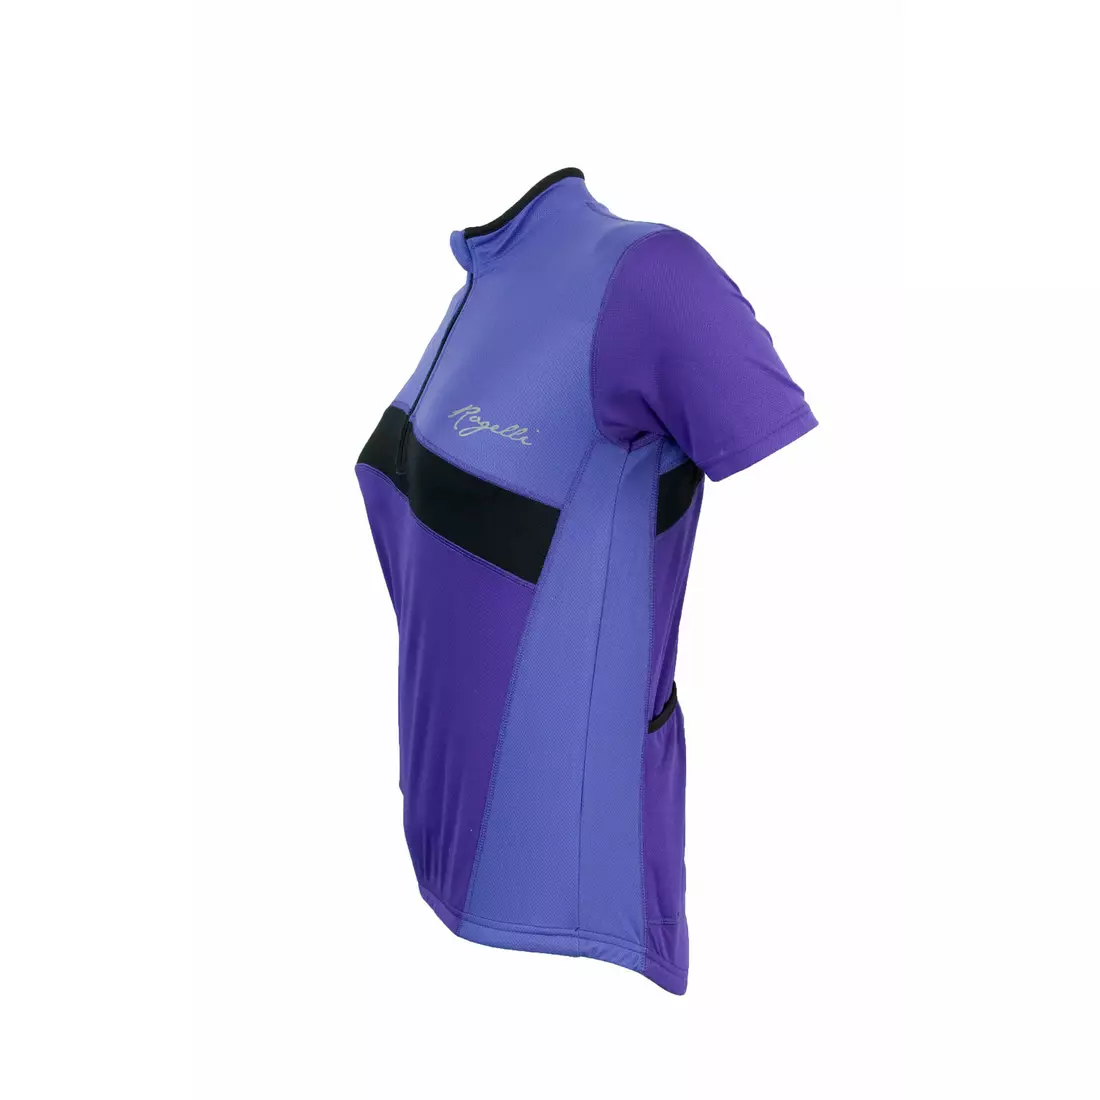 ROGELLI BONA women's cycling jersey 001.024, purple